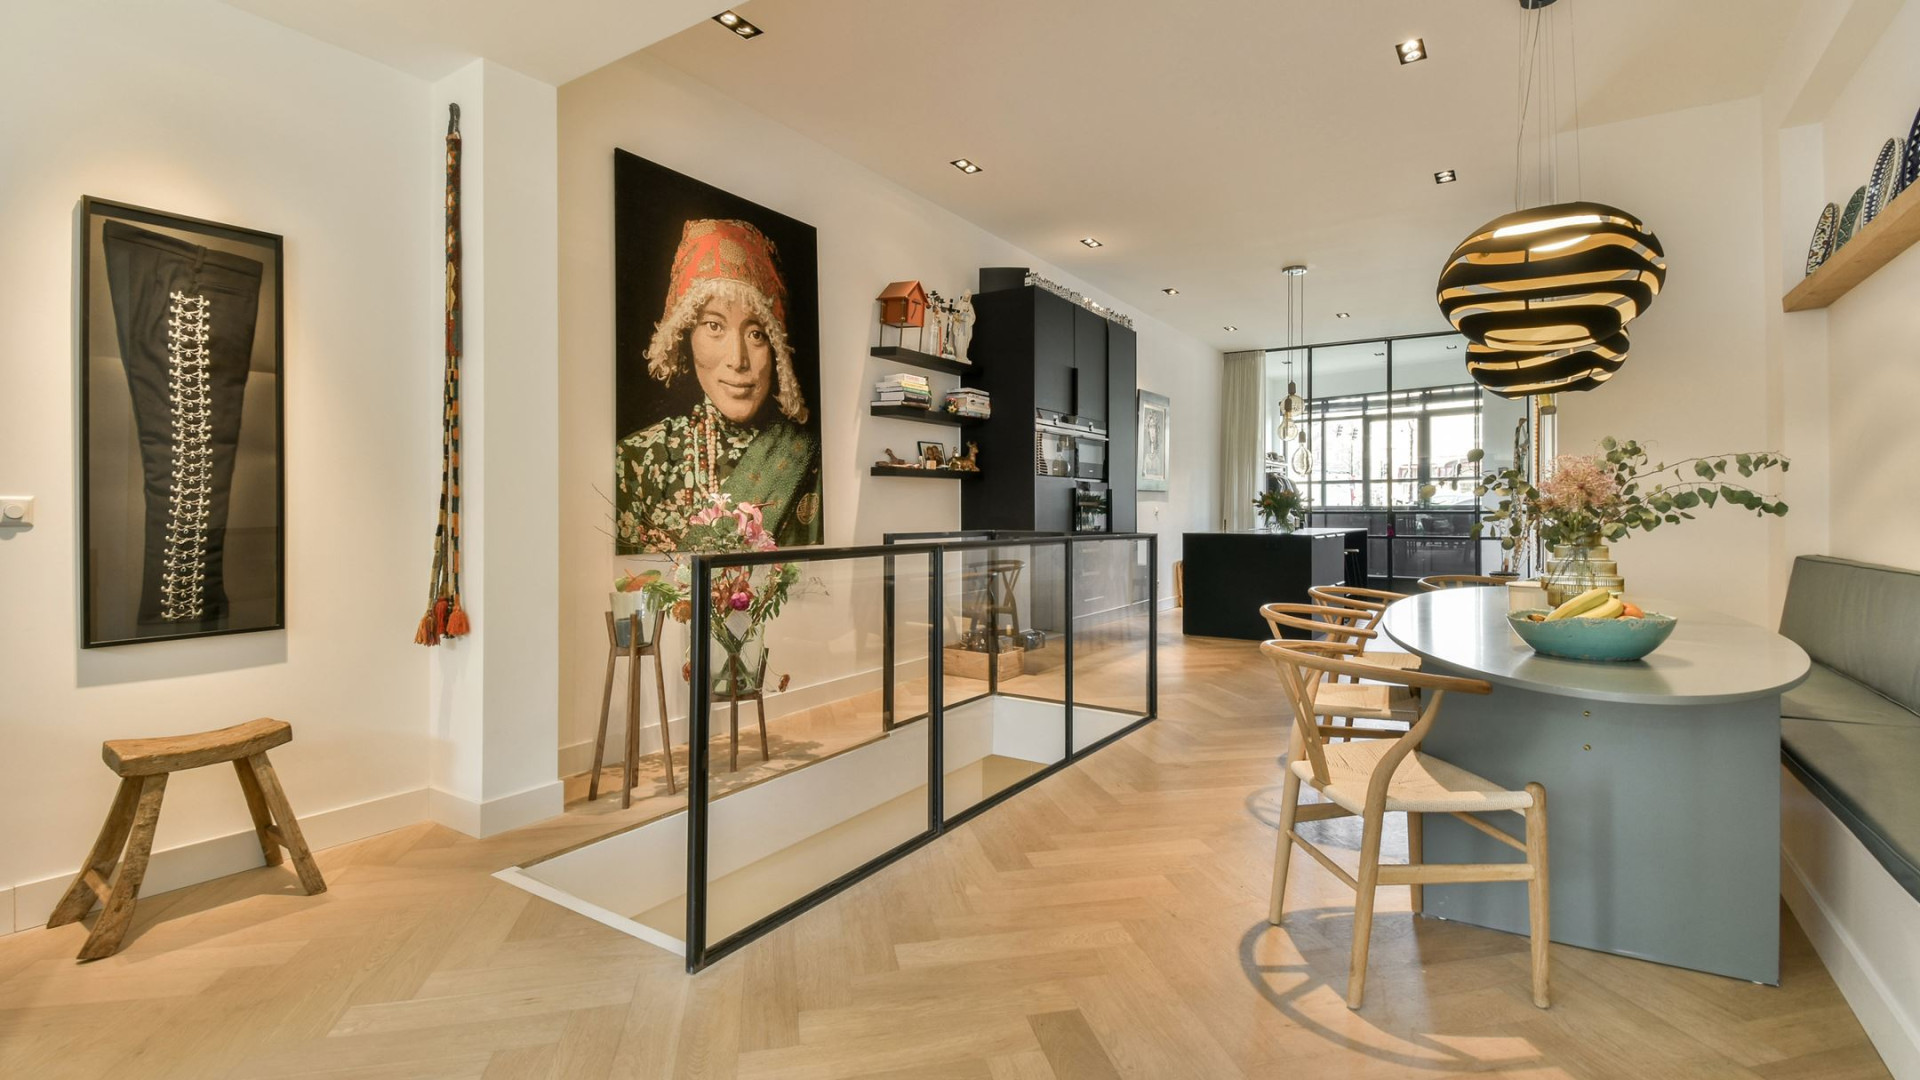 Art Rooijakkers heeft dit bijzondere dubbele benedenhuis in Amsterdam gekocht. Zie alle binnenfoto's 2